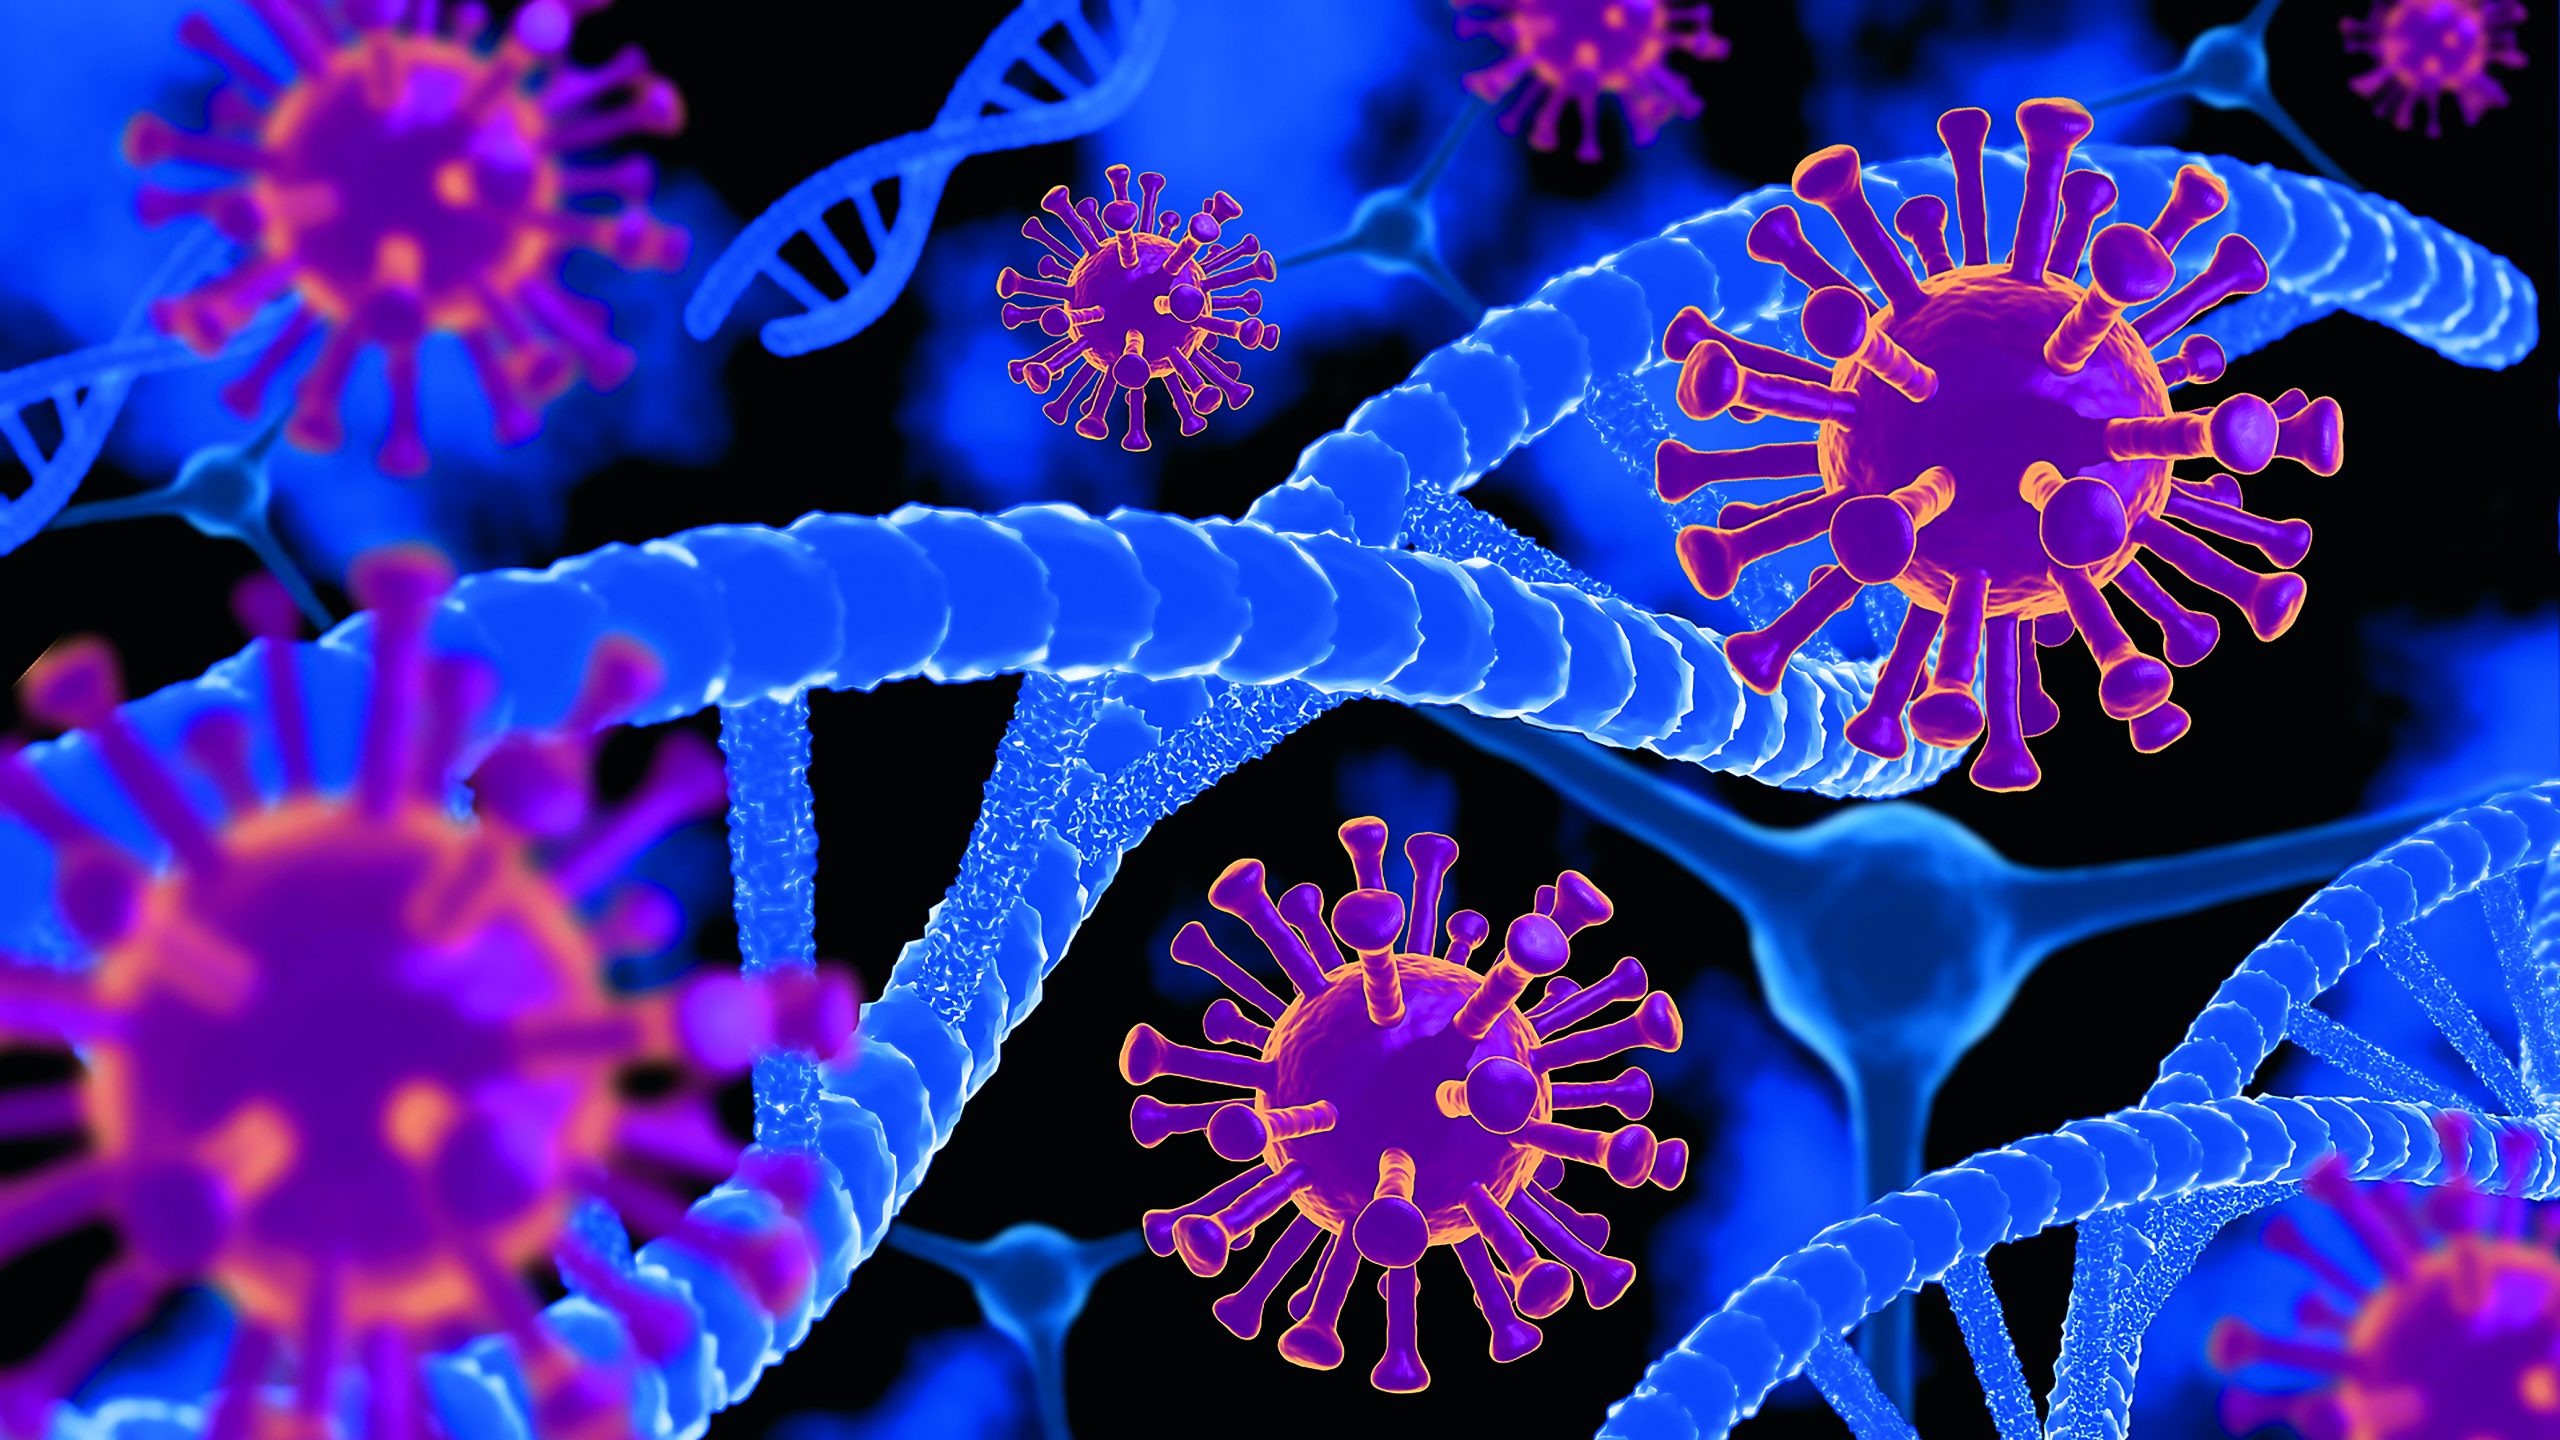 Περισσότερο μεταδοτικός έχει γίνει ο ιός SARS-CoV-2 σύμφωνα με νέα μελέτη